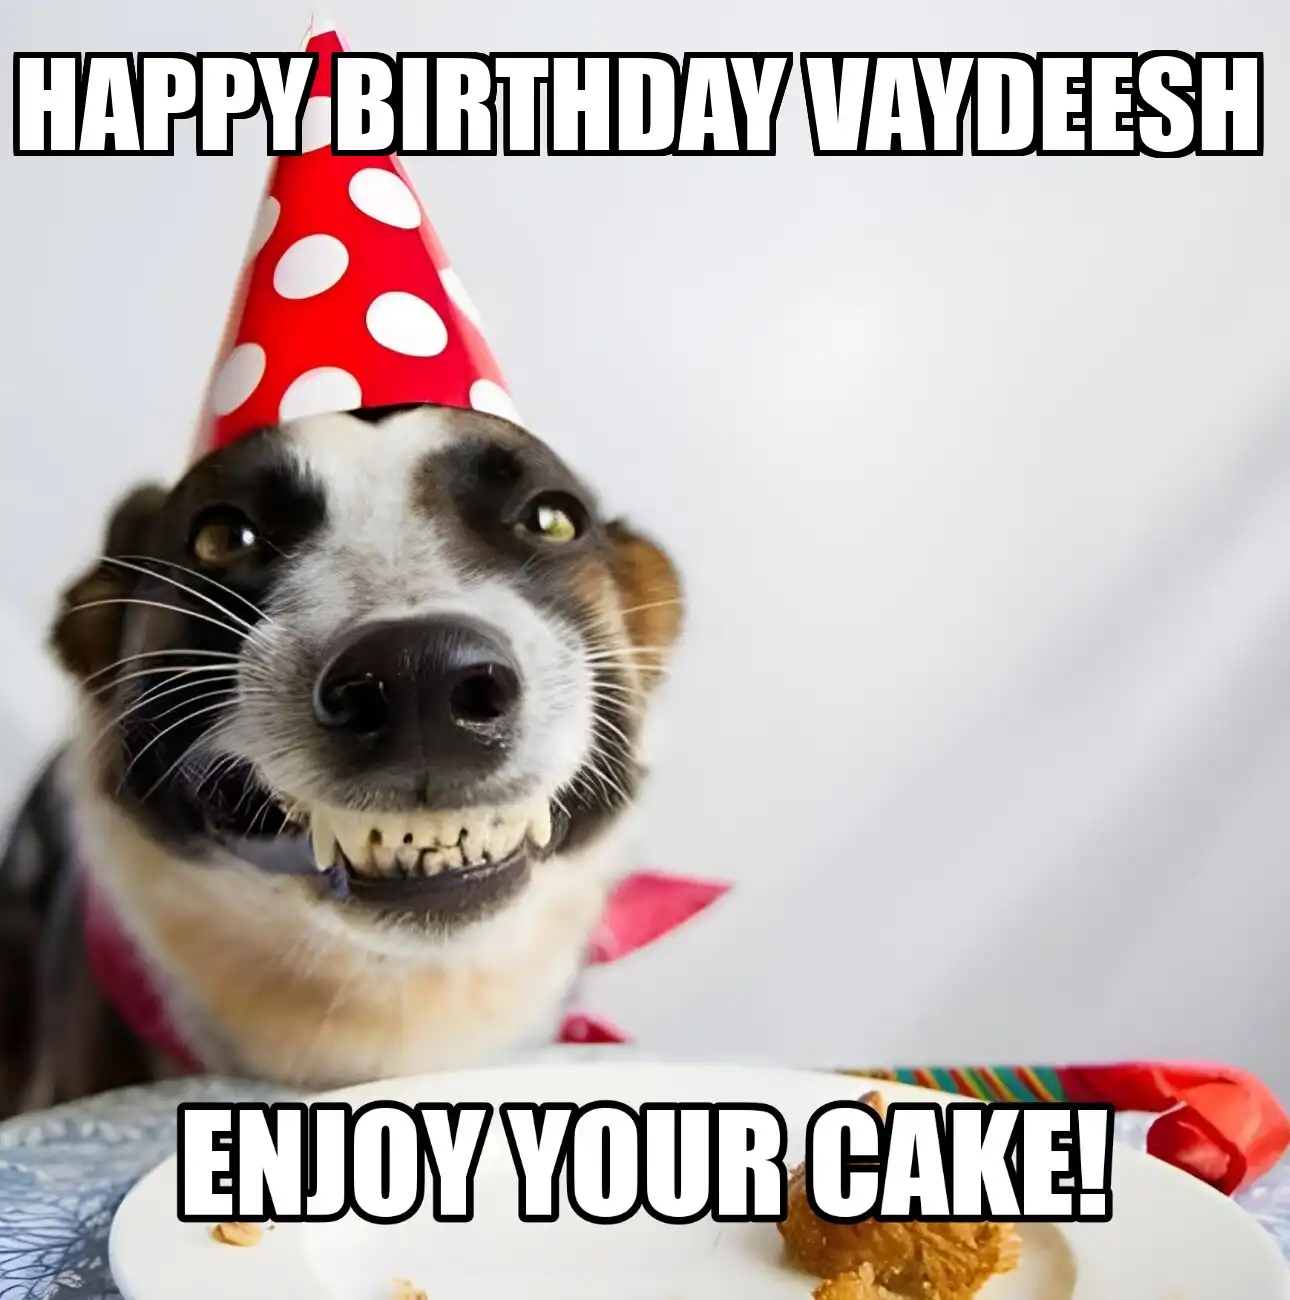 Happy Birthday Vaydeesh Enjoy Your Cake Dog Meme